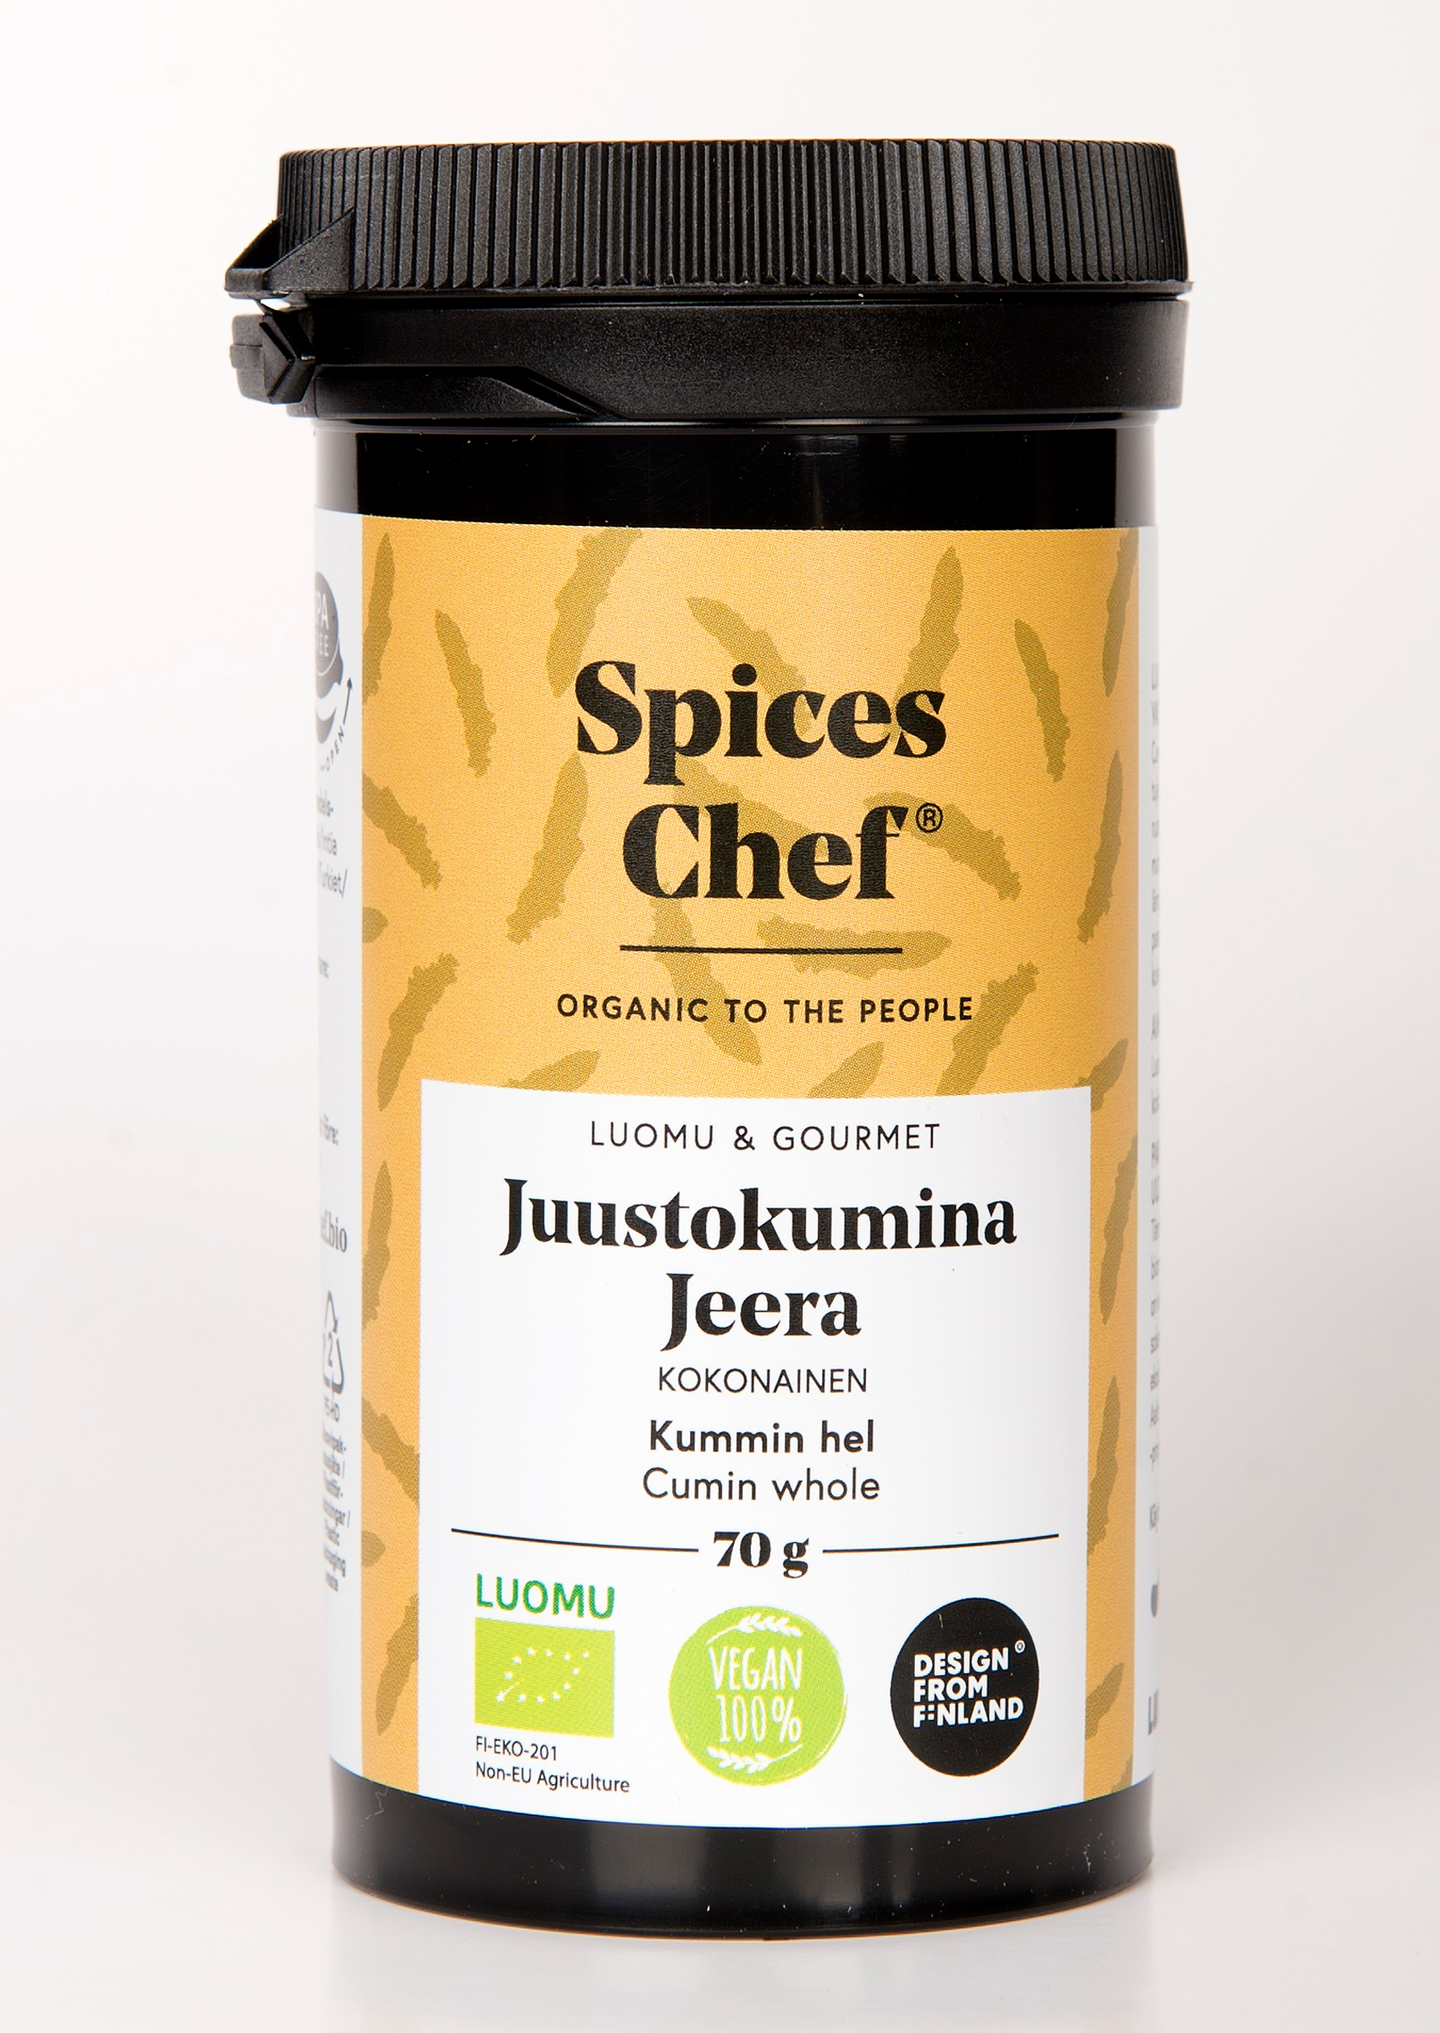 Spices Chef luomu juustokumina jeera kokonainen 70g  BPA-vapaassa biomuovi maustepurkissa.